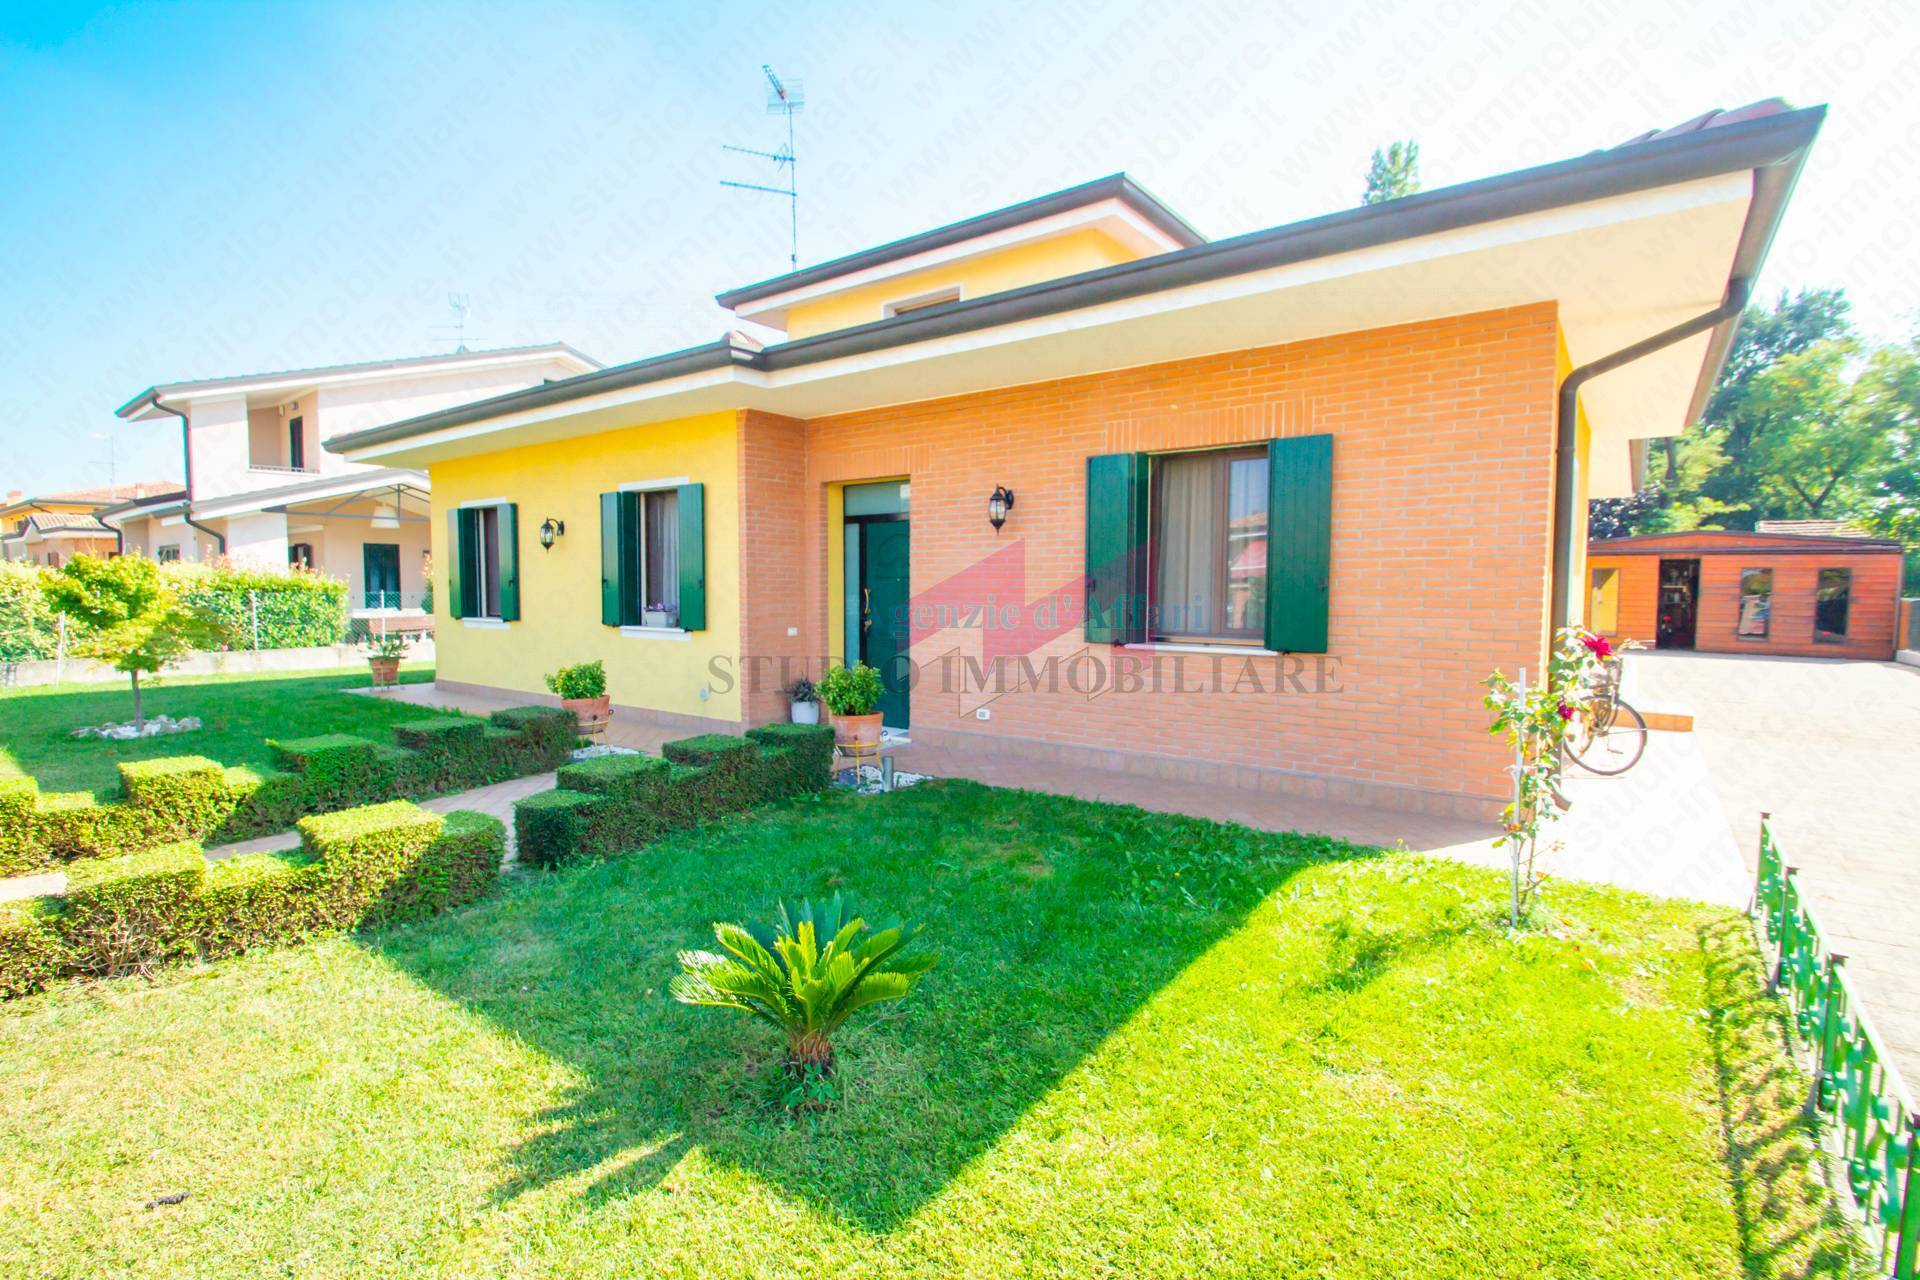 Villa in vendita a Melara, 5 locali, prezzo € 239.000 | PortaleAgenzieImmobiliari.it